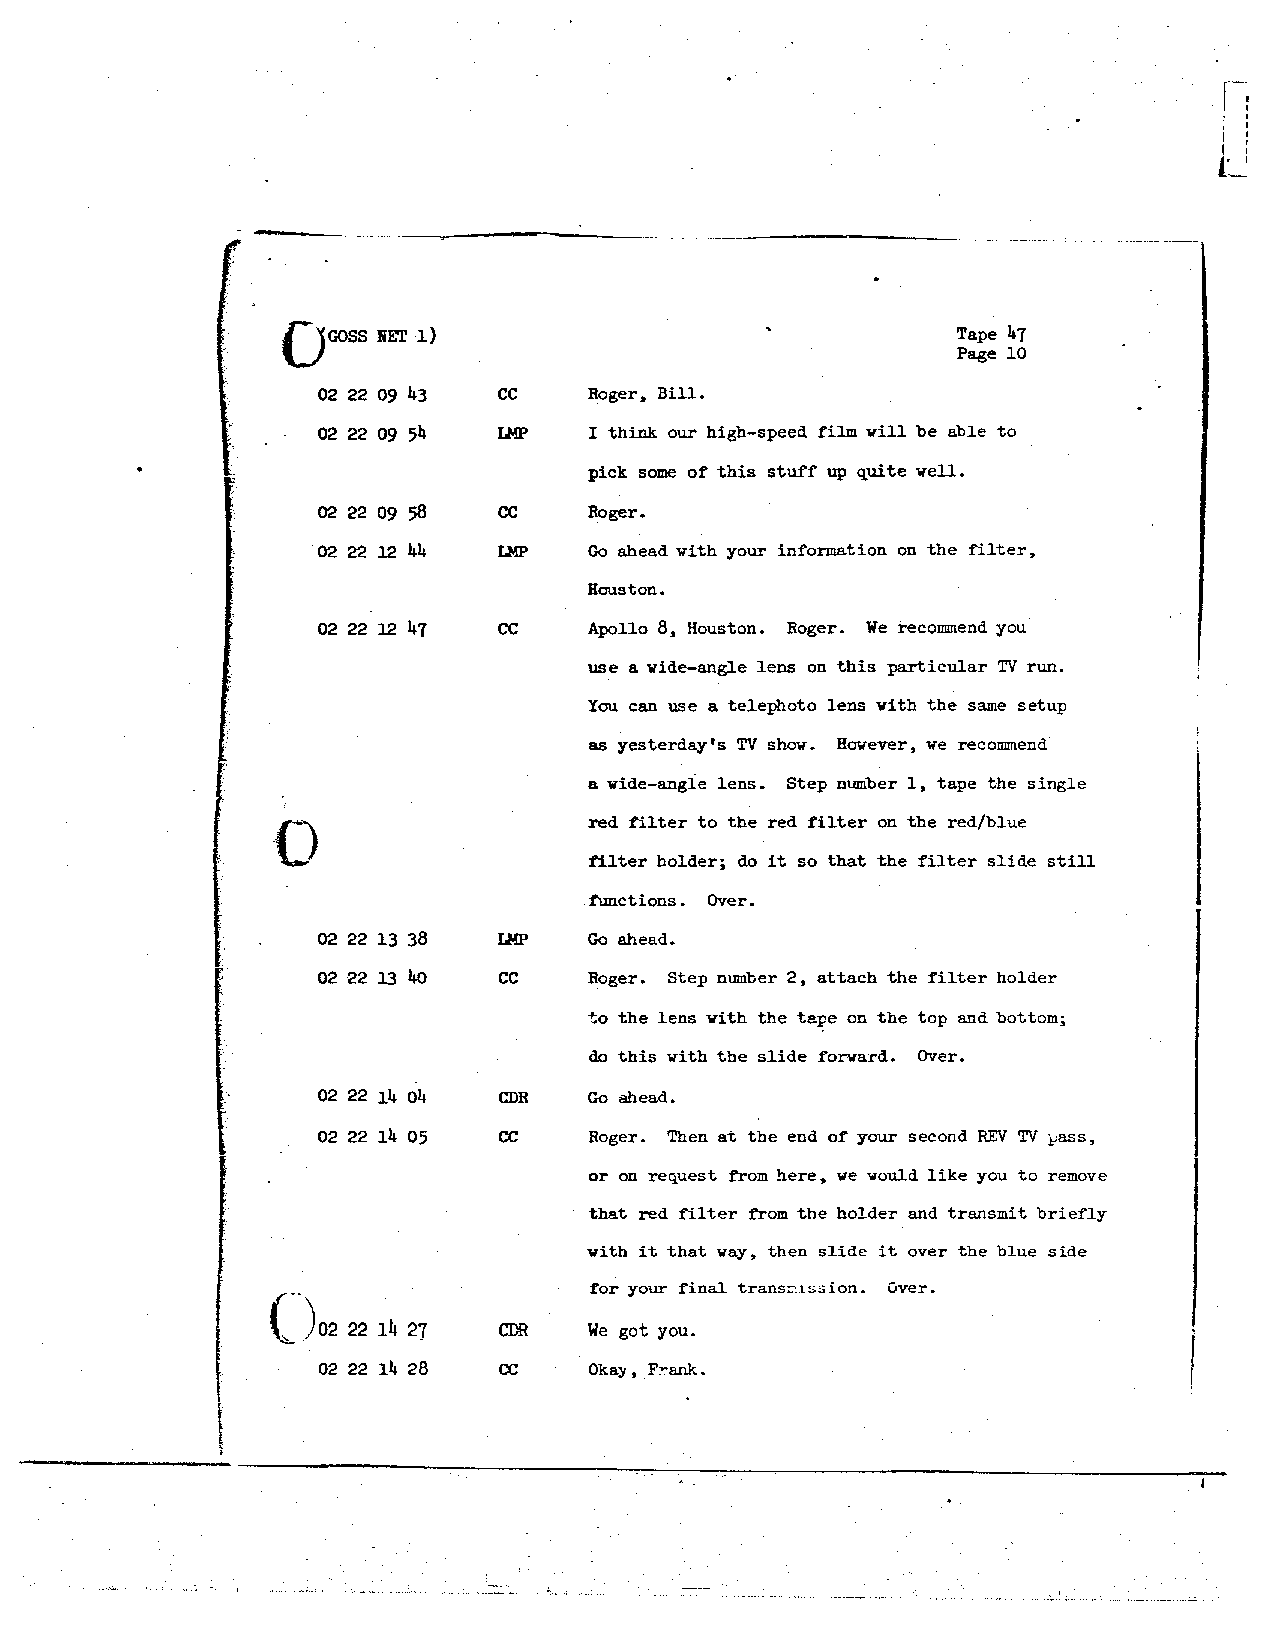 Page 367 of Apollo 8’s original transcript